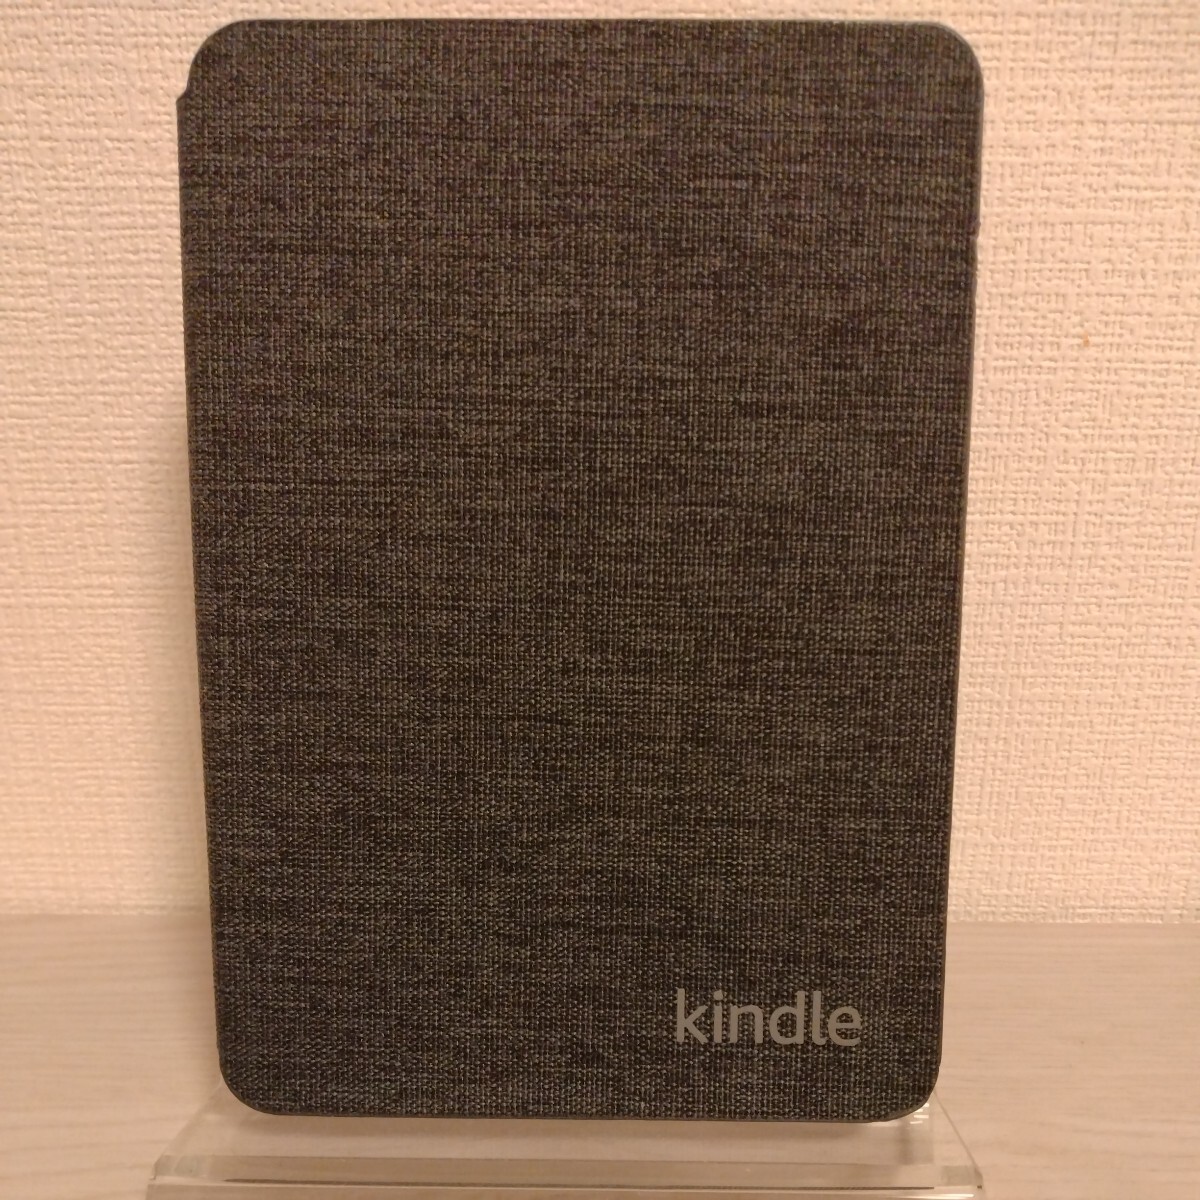  (第11世代) - 2022年発売 Kindle (16GB) 6インチディスプレイ 電子書籍リーダー ブラック（広告あり）カバーセット